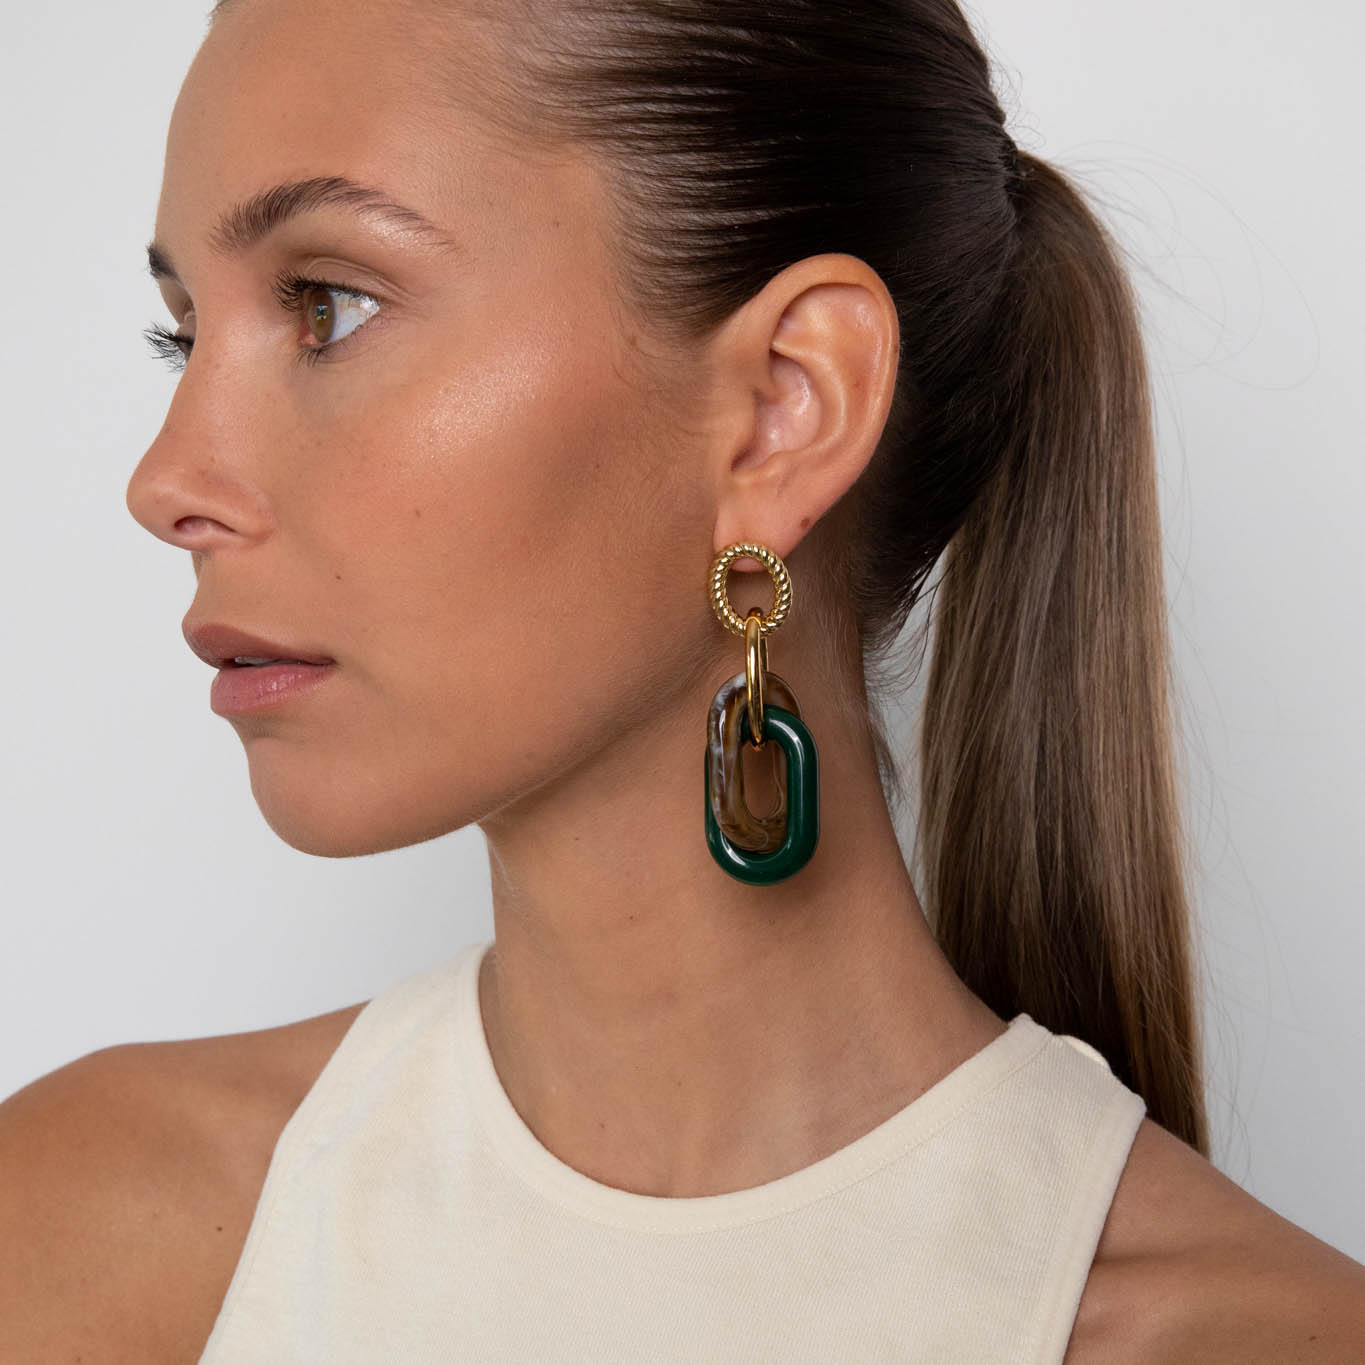 Cobalt green mix earrings